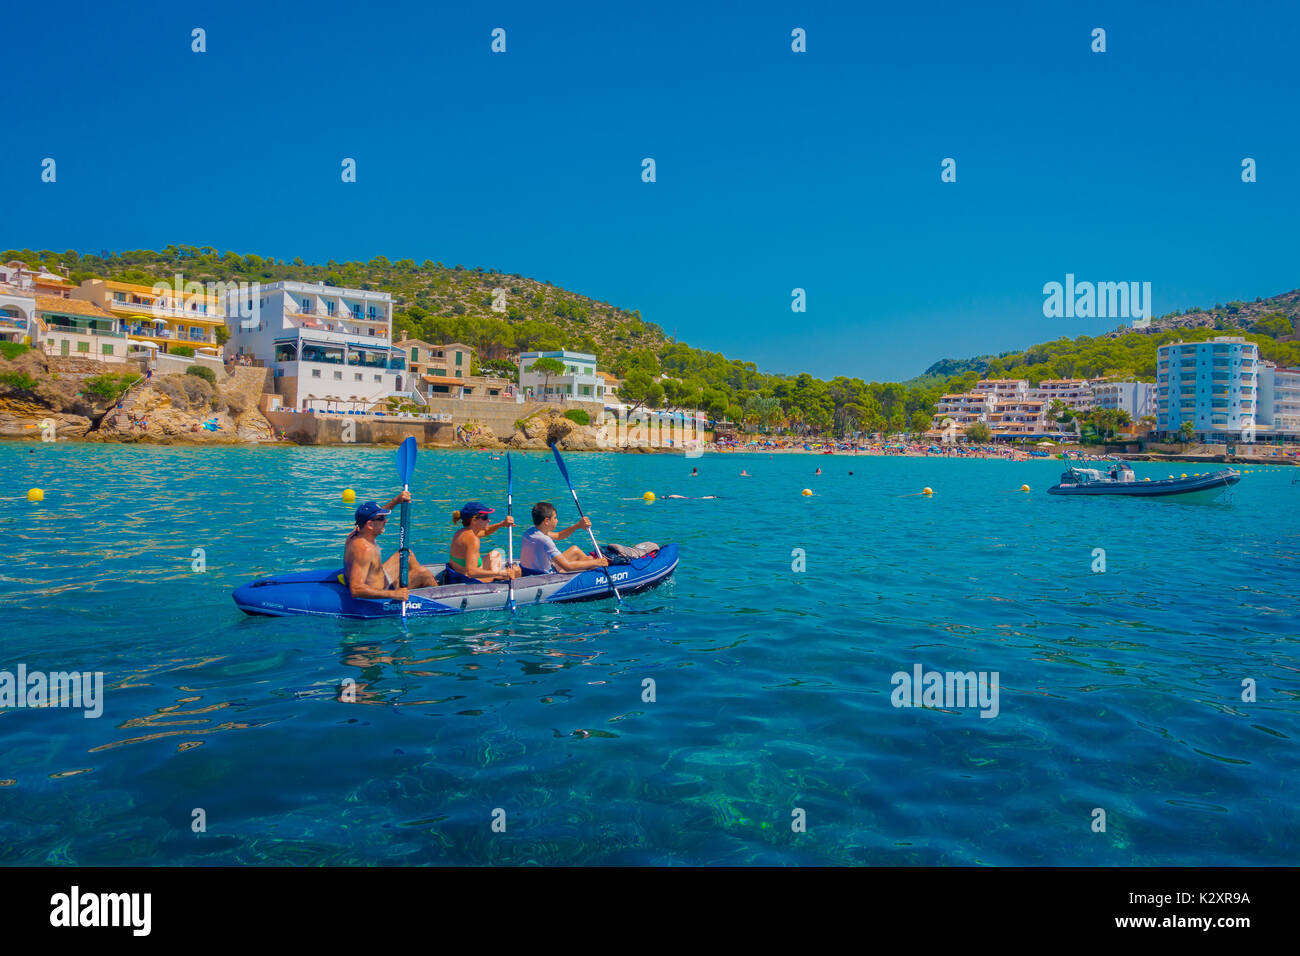 SANT ELM, MALLORCA, SPANIEN - 18. AUGUST 2017: Nicht identifizierte Personen Paddeln im Meer an Sant Elm, in einem schönen blauen Wasser und Himmel auf Mallorca, Spanien Stockfoto